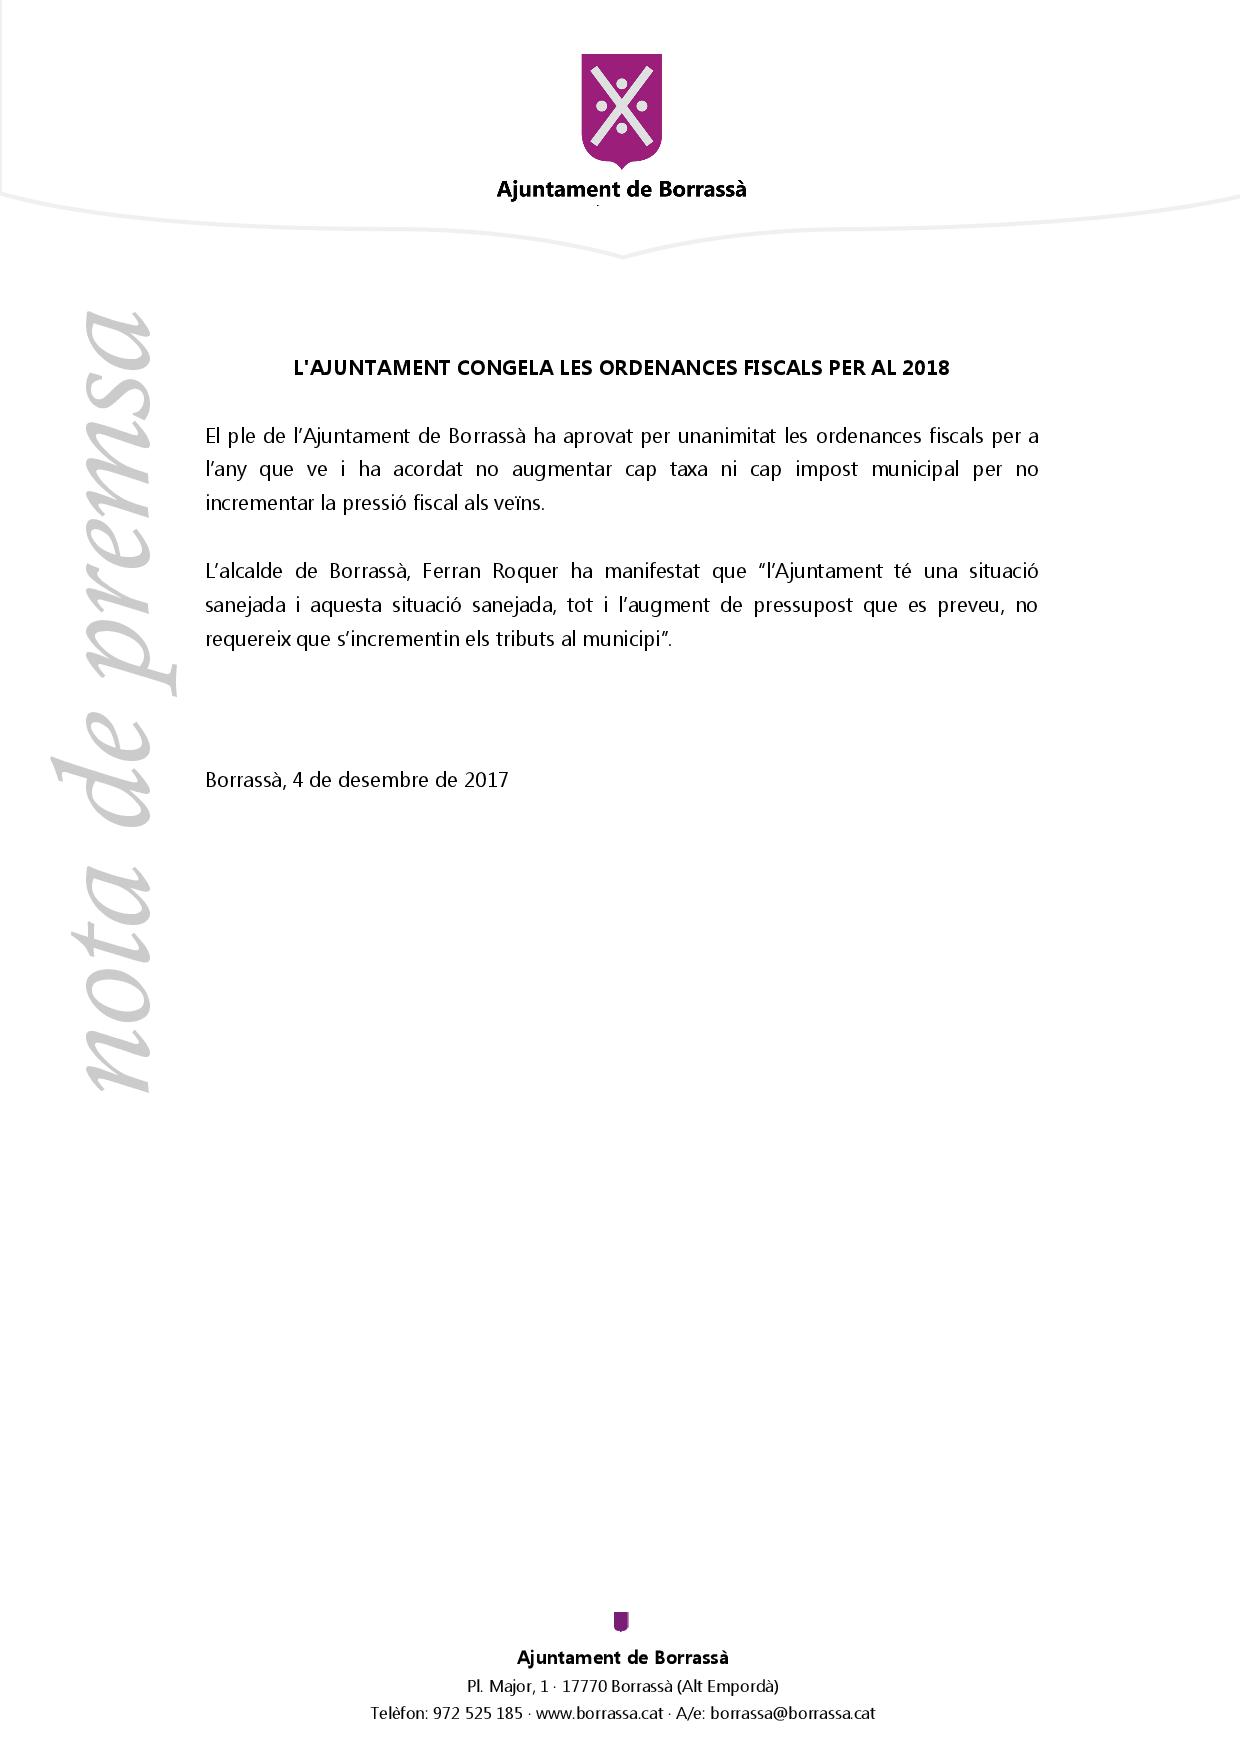 L'Ajuntament de Borrassà ha aprovat congelar les ordenances fiscals per al 2018. 